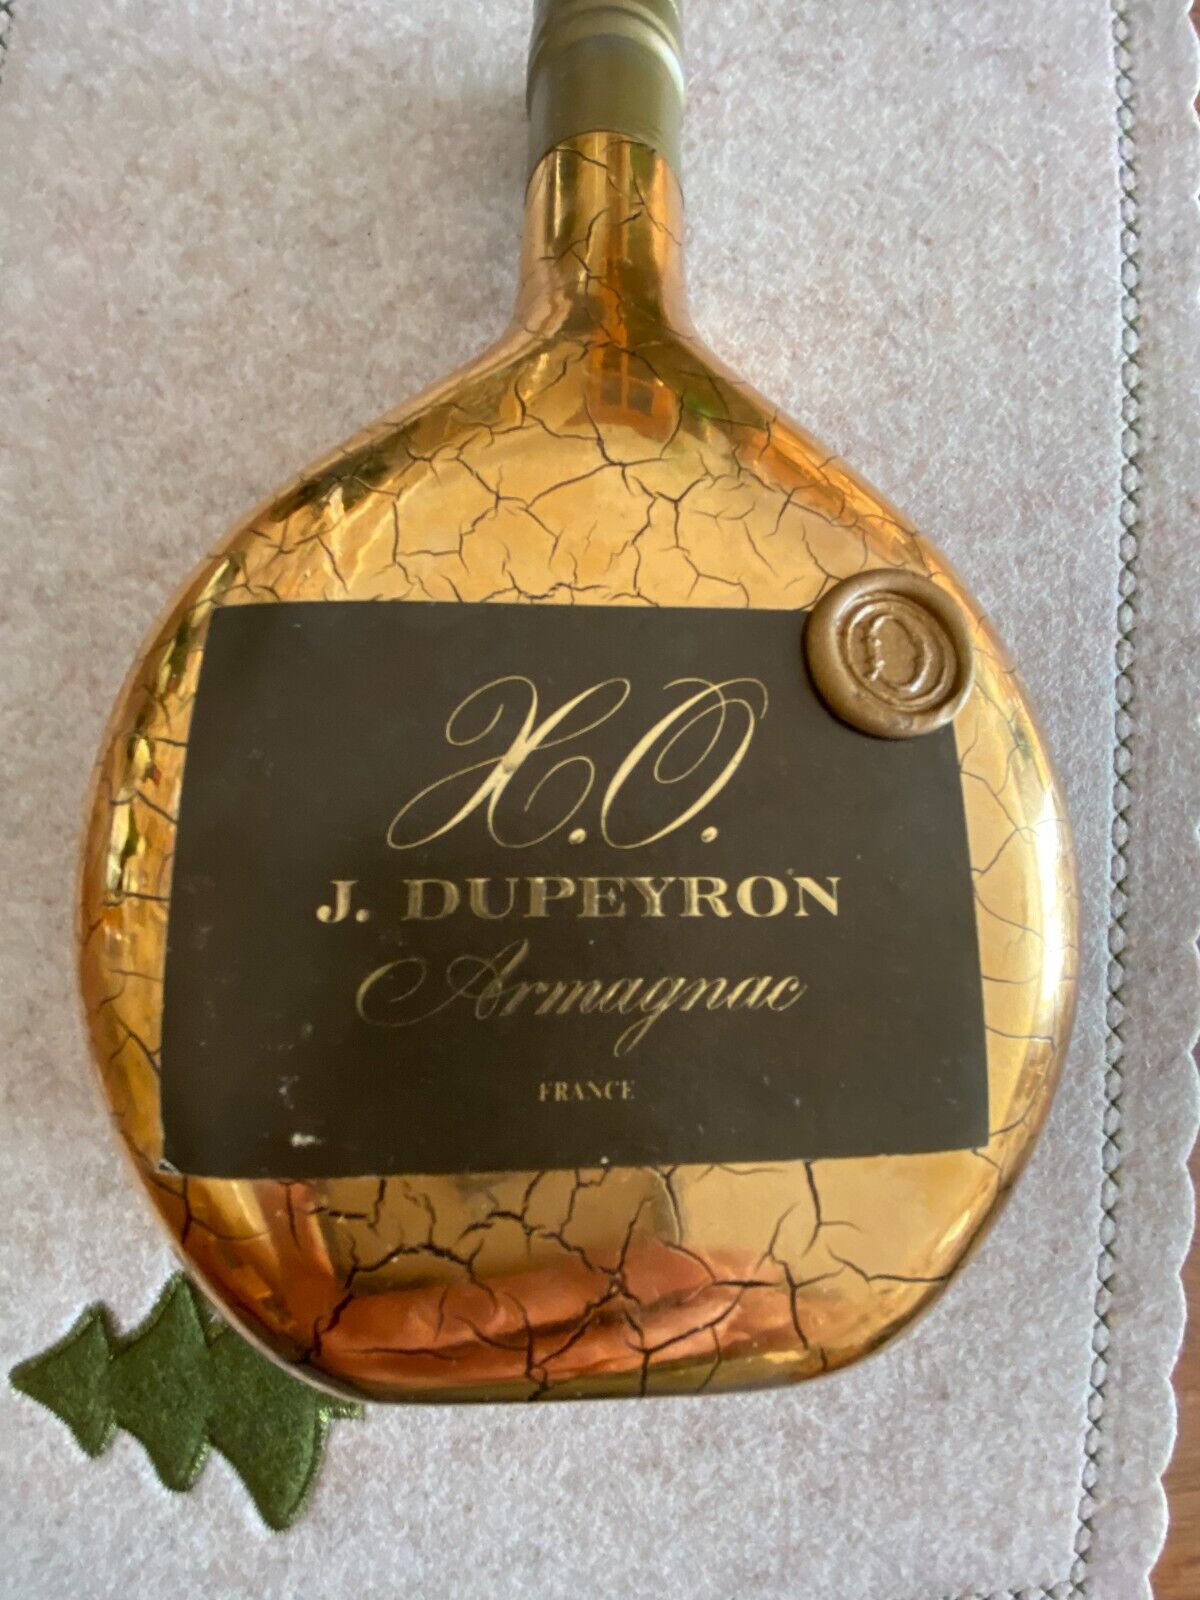 Biete eine Flasche Armagnac XO  J. Dupeyron   700ml.  40%vol.